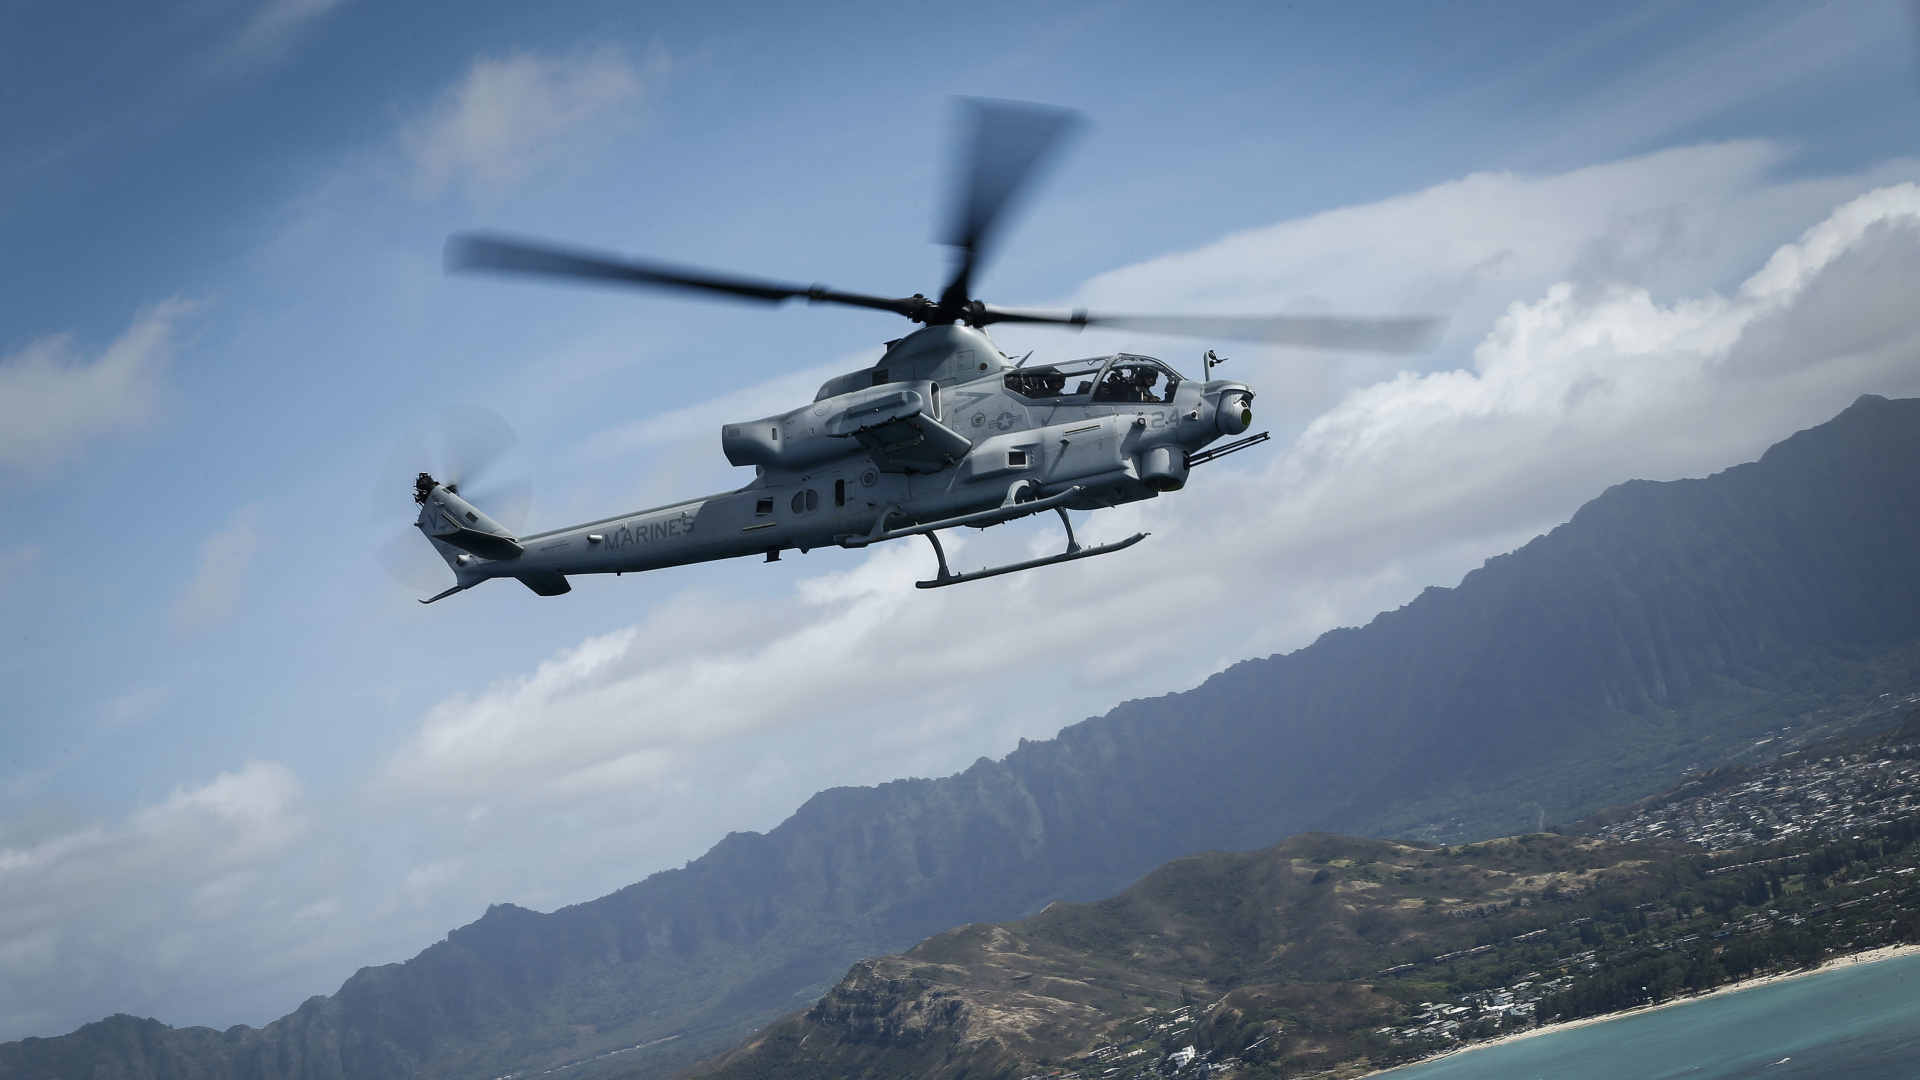 直升机, 攻击直升机, 美国海军陆战队, 直升机转子的, 旋翼飞机 壁纸 1920x1080 允许